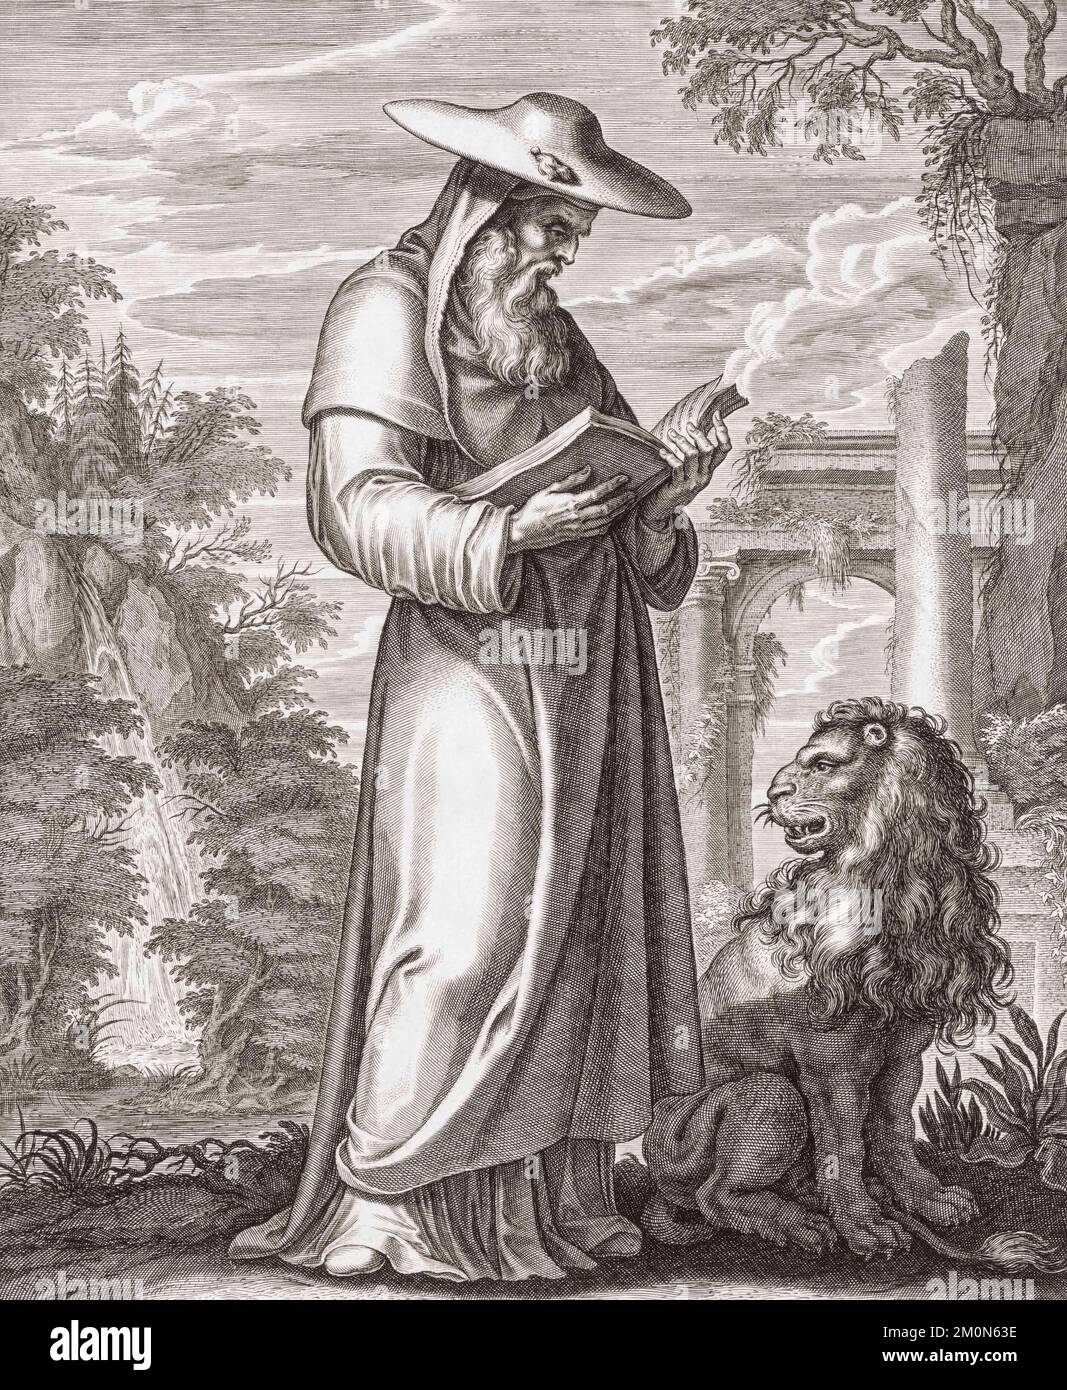 Der Heilige Jerome, auch bekannt als Jerome von Stridon, wurde von 34 Jahren bis 420 erbaut. Er übersetzte die Bibel ins Lateinische, ein Werk namens Vulgate. Aus einem Aufdruck aus dem 17.. Jahrhundert von Cornelis Galle dem Ältesten aus einem Werk von David Teniers I. Stockfoto